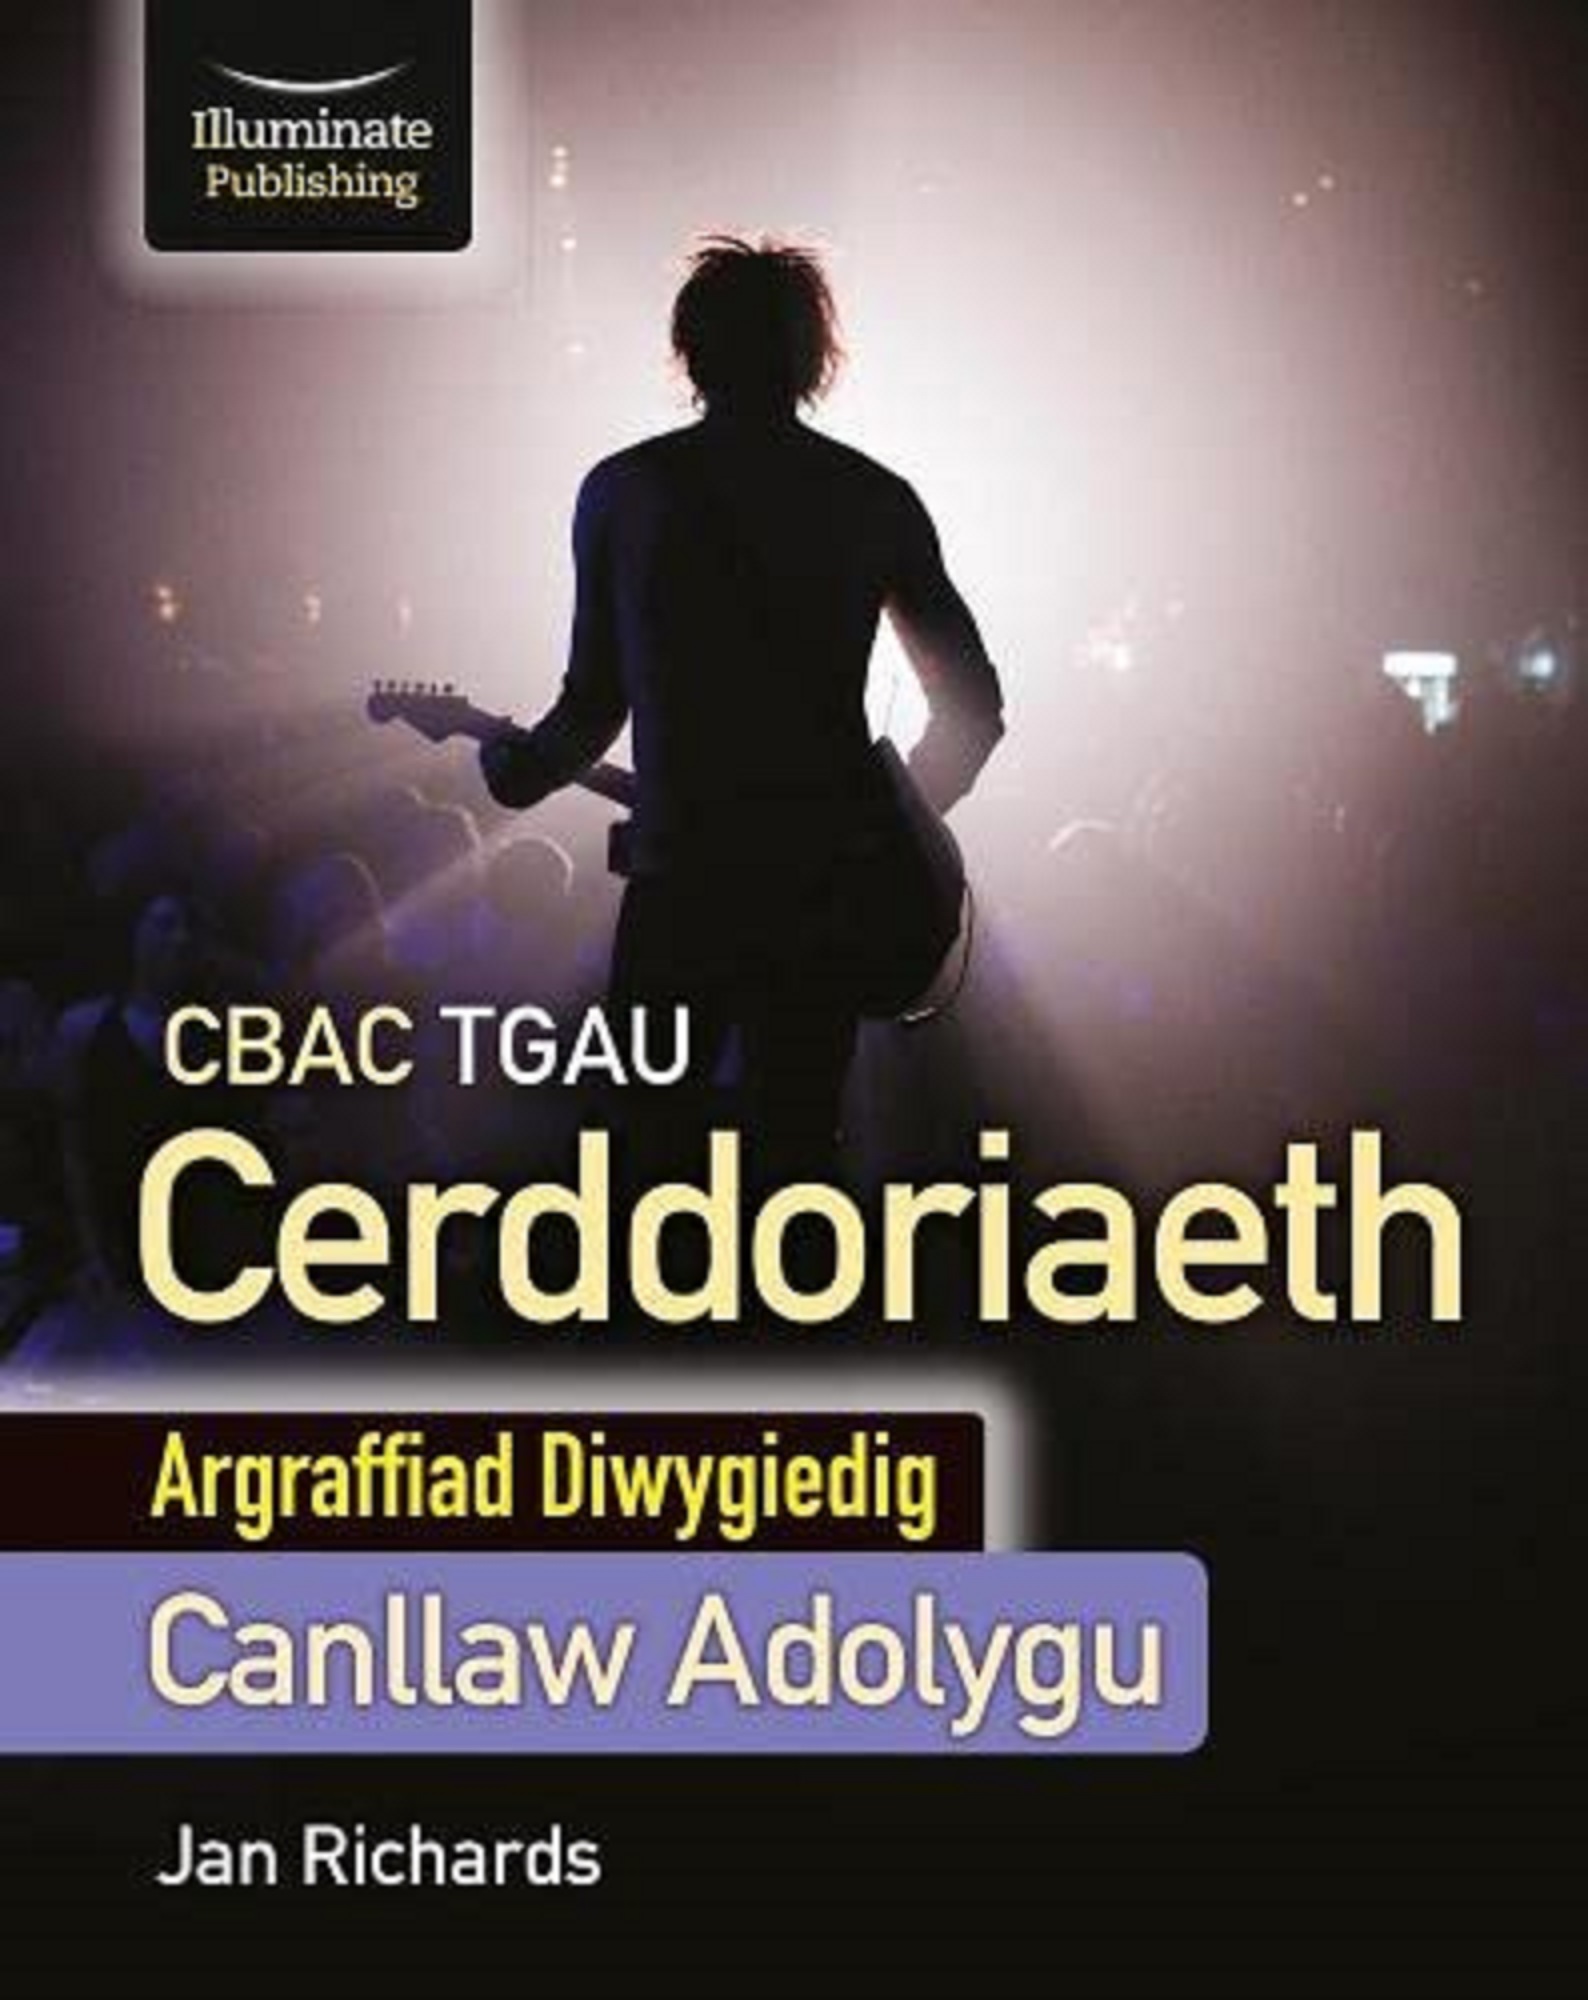 CBAC TGAU Cerddoriaeth, Canllaw Adolygu